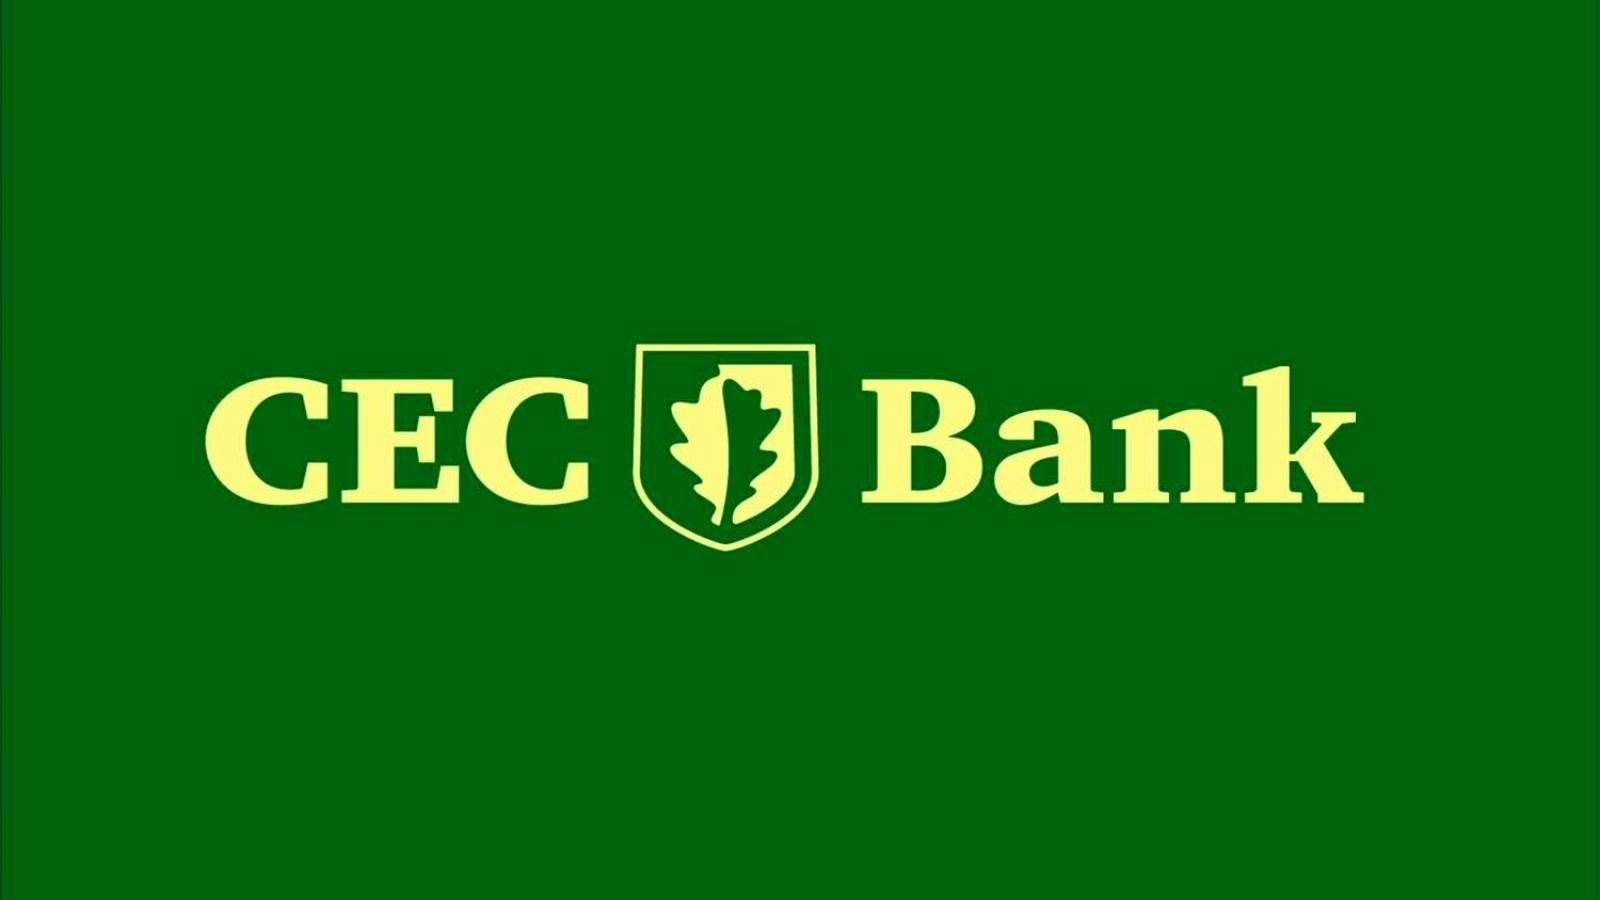 CEC Bank VIKTIGT Åtgärd Uppmärksamhet Alla rumänska kunder